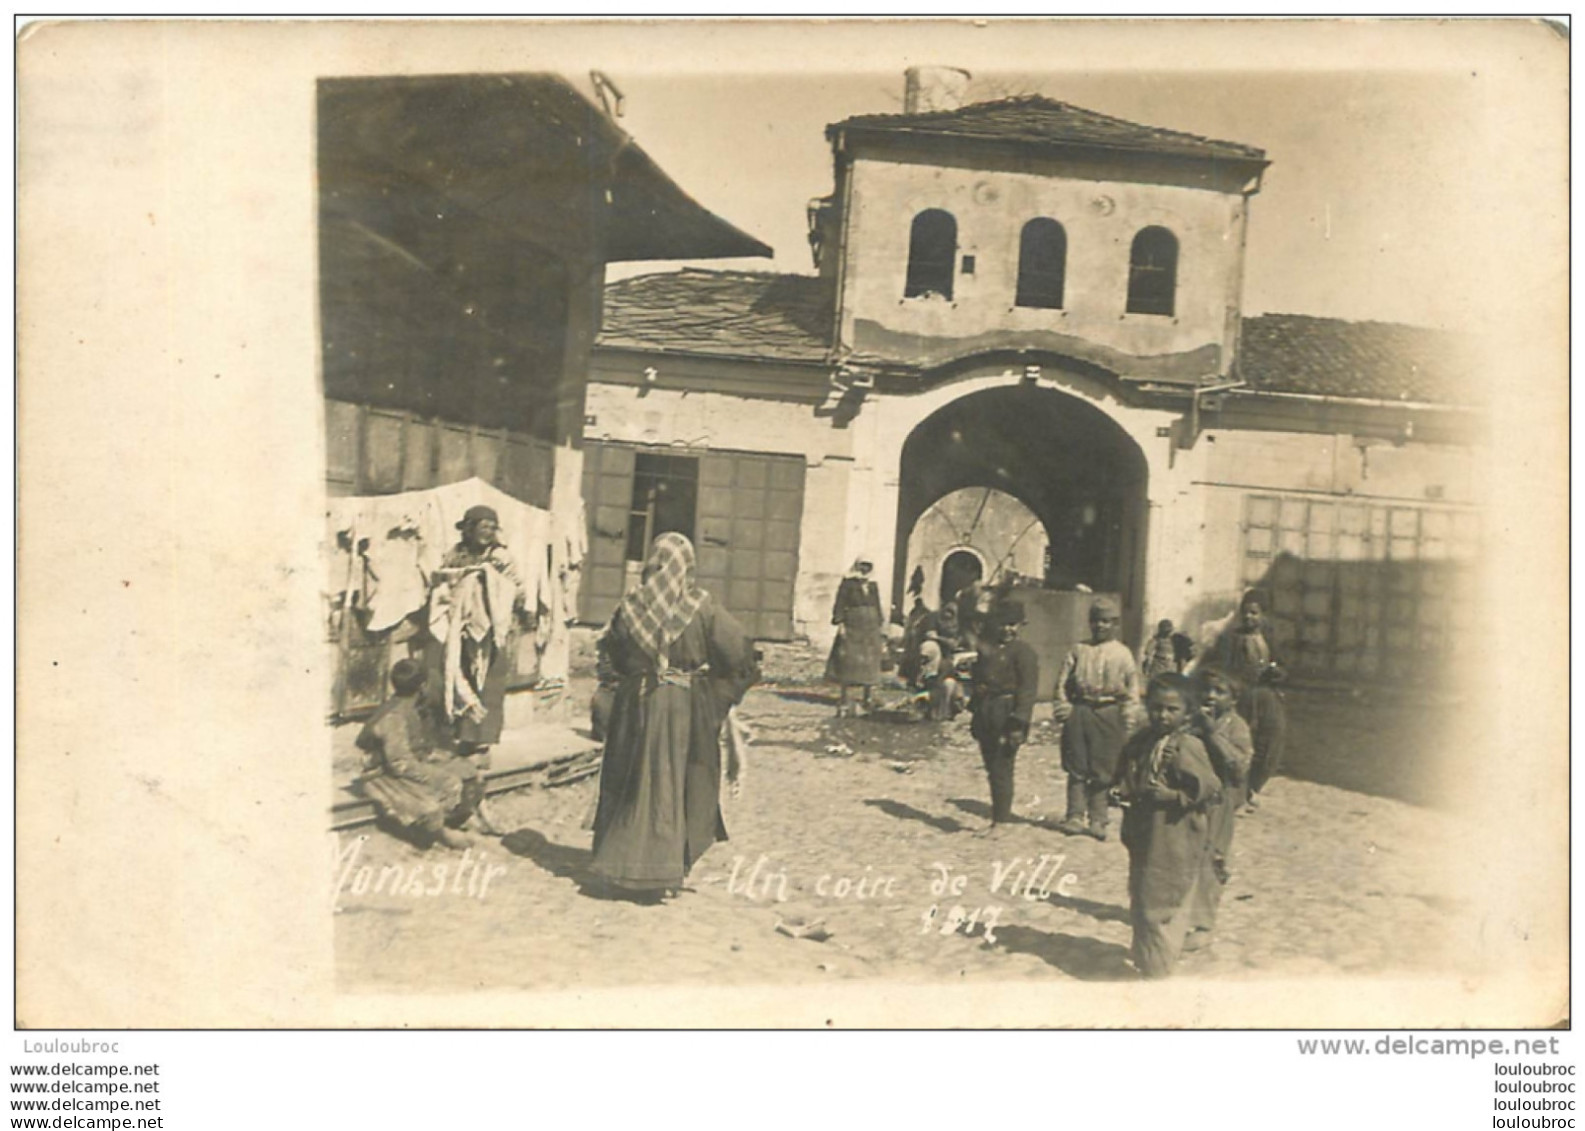 MONASTIR CARTE PHOTO UN COIN DE VILLE  1917 VOIR LES DEUX SCANS - Serbia